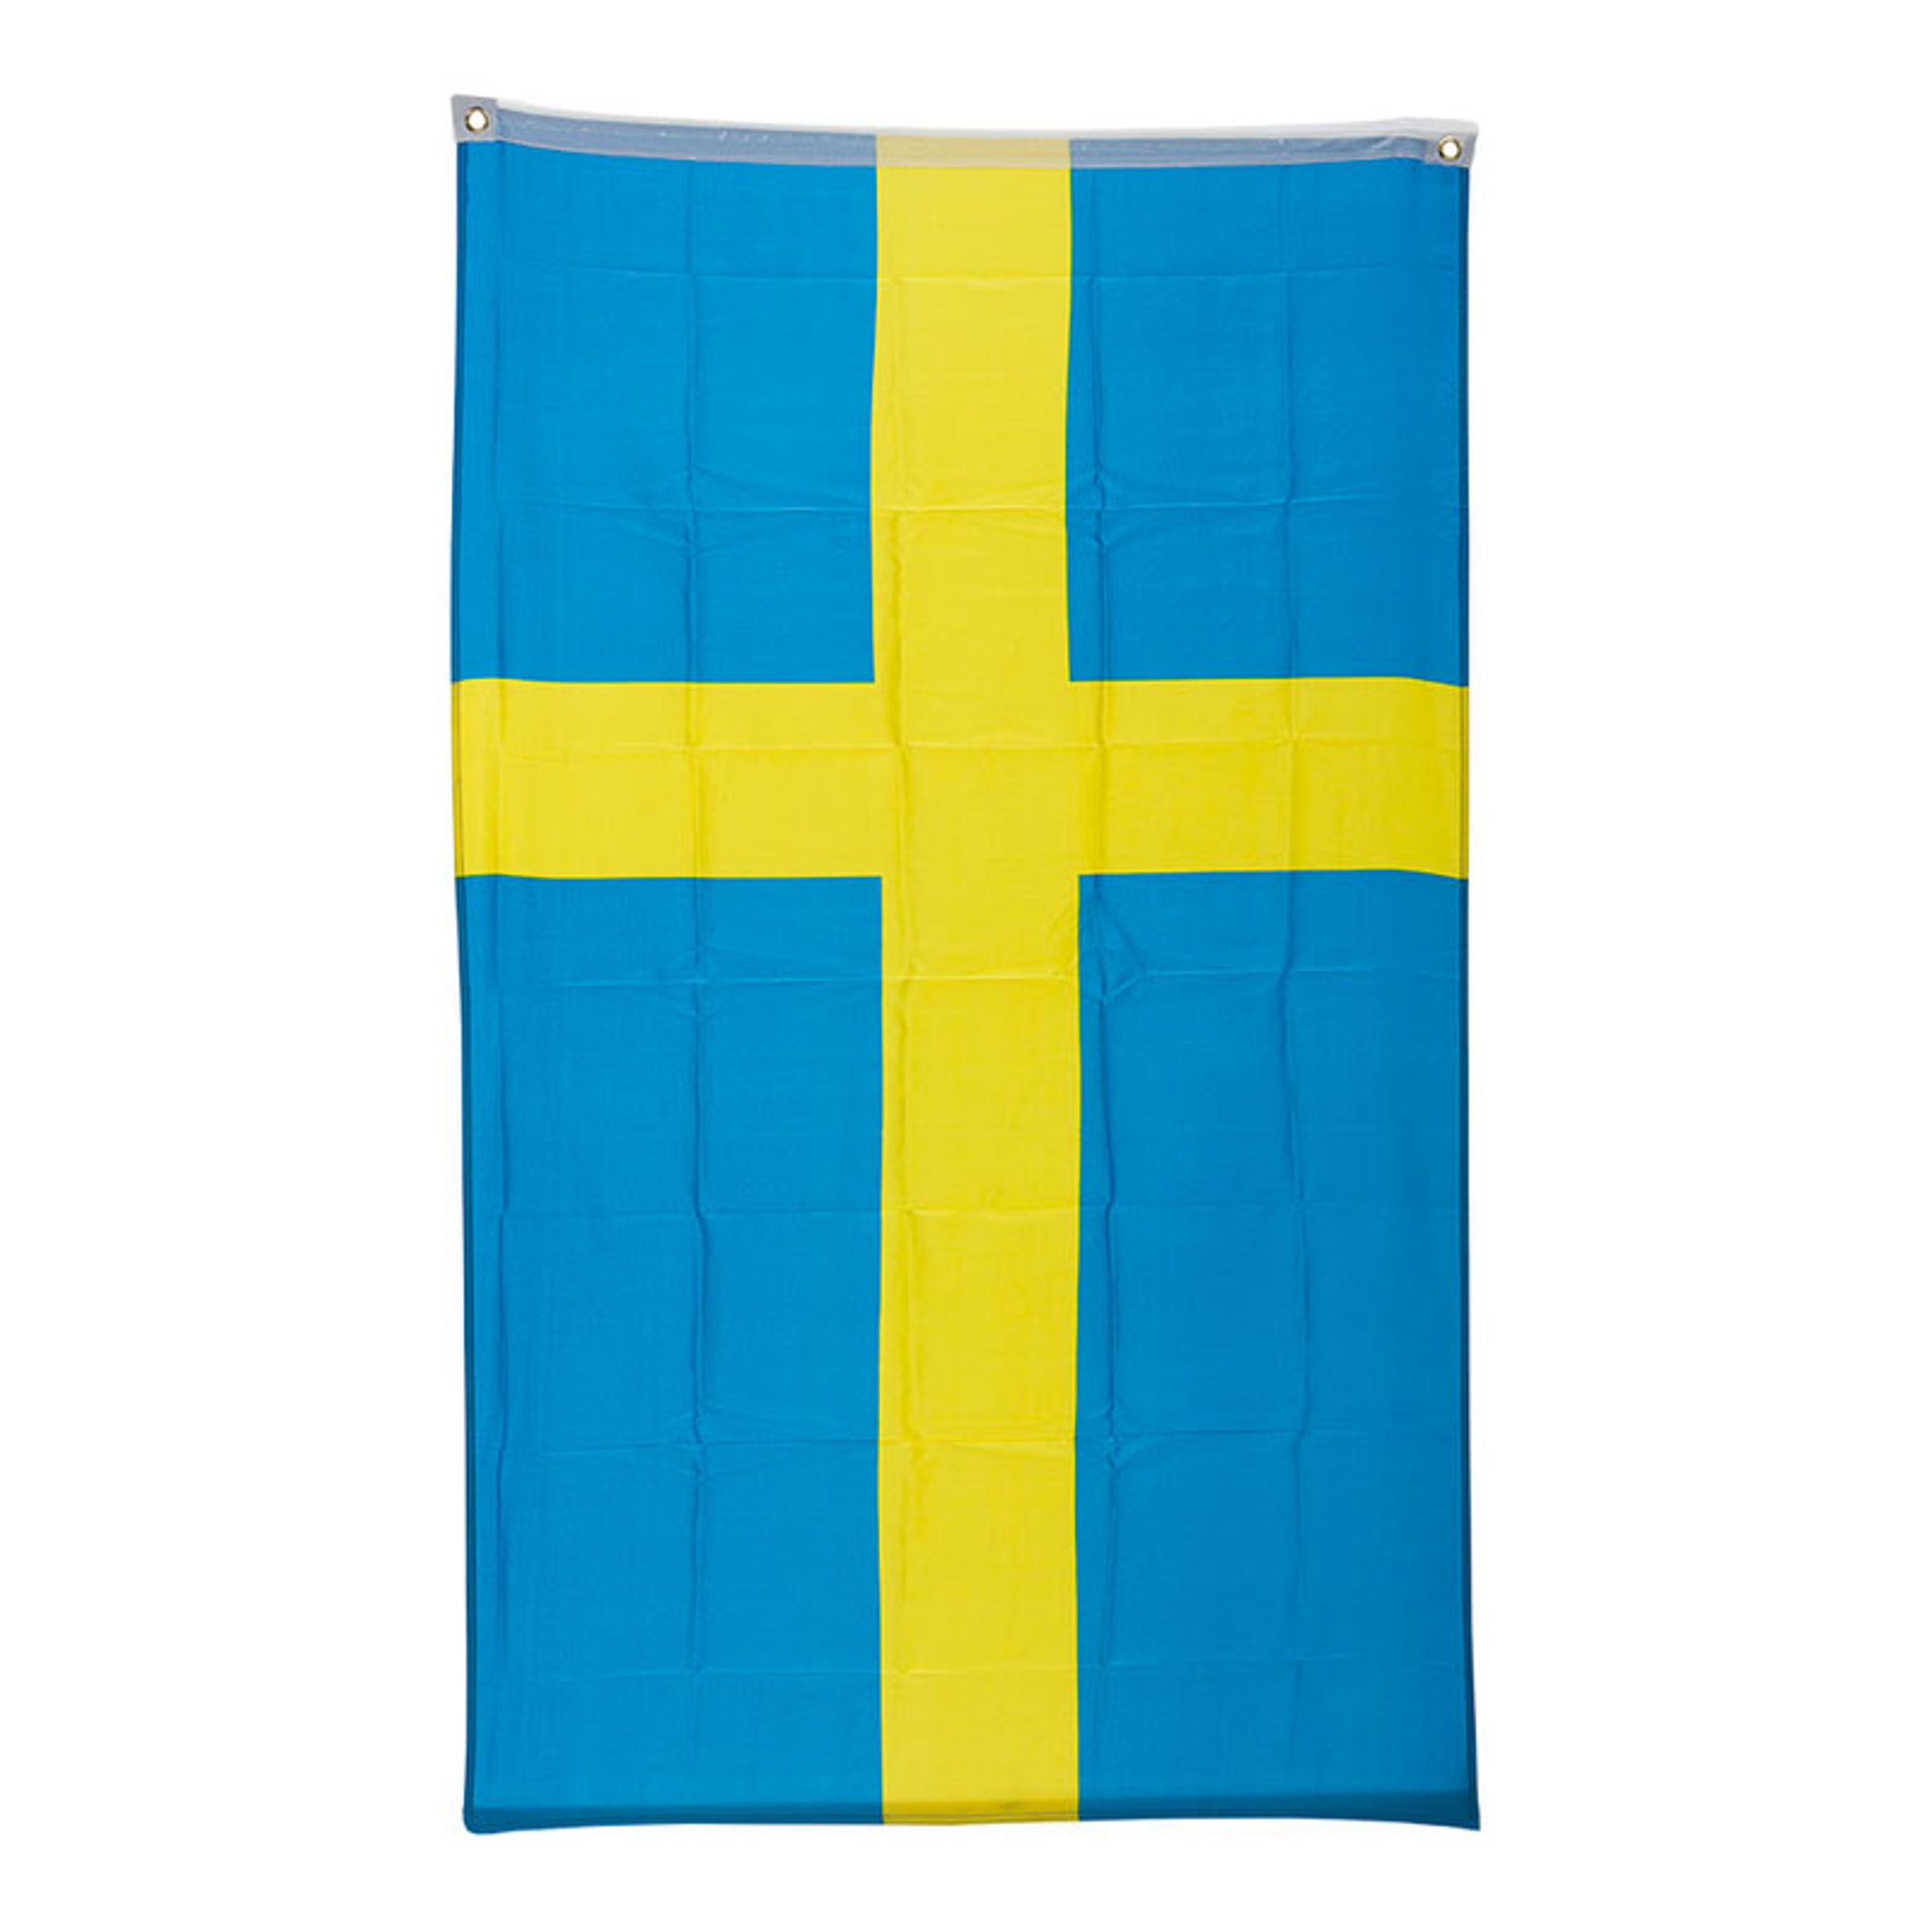 Sverigeflagga 150x90cm